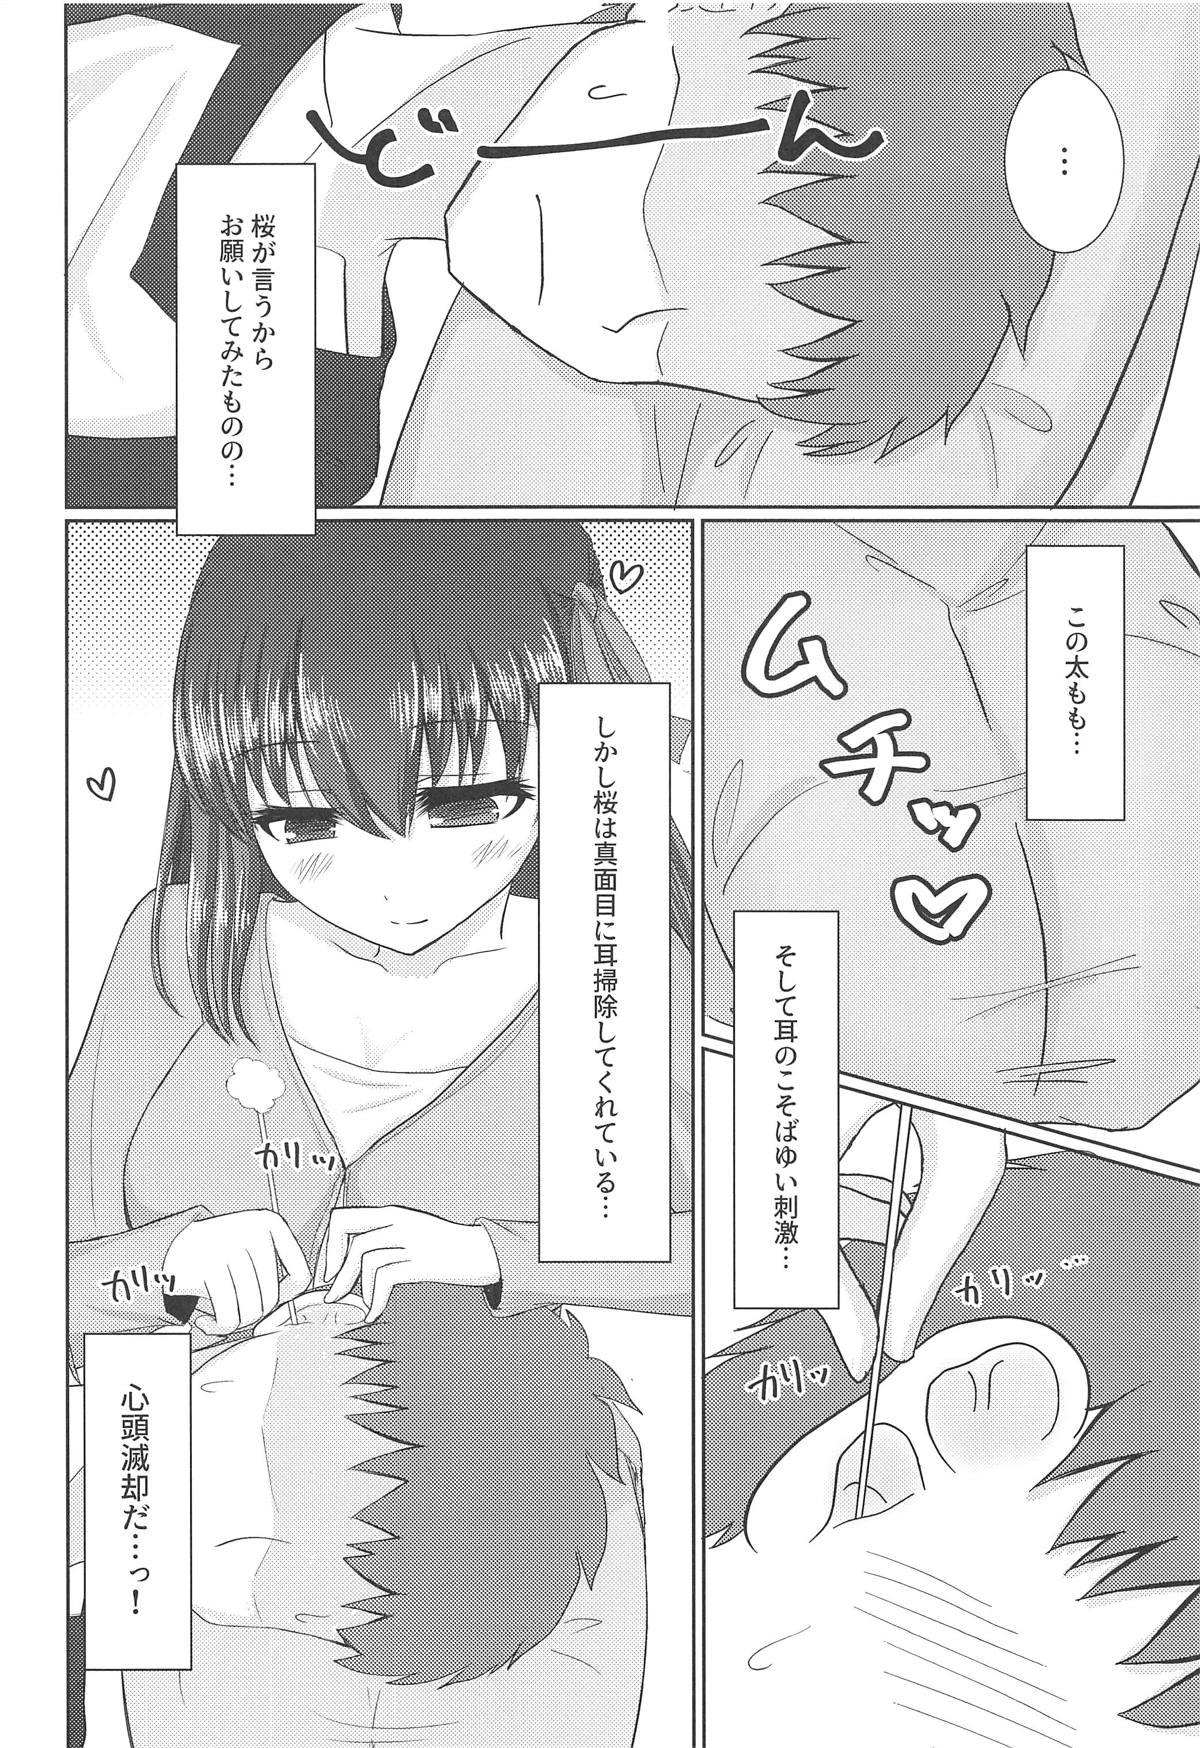 Dotado Hiza no Ue ni Sakura - Fate stay night Hunks - Page 5